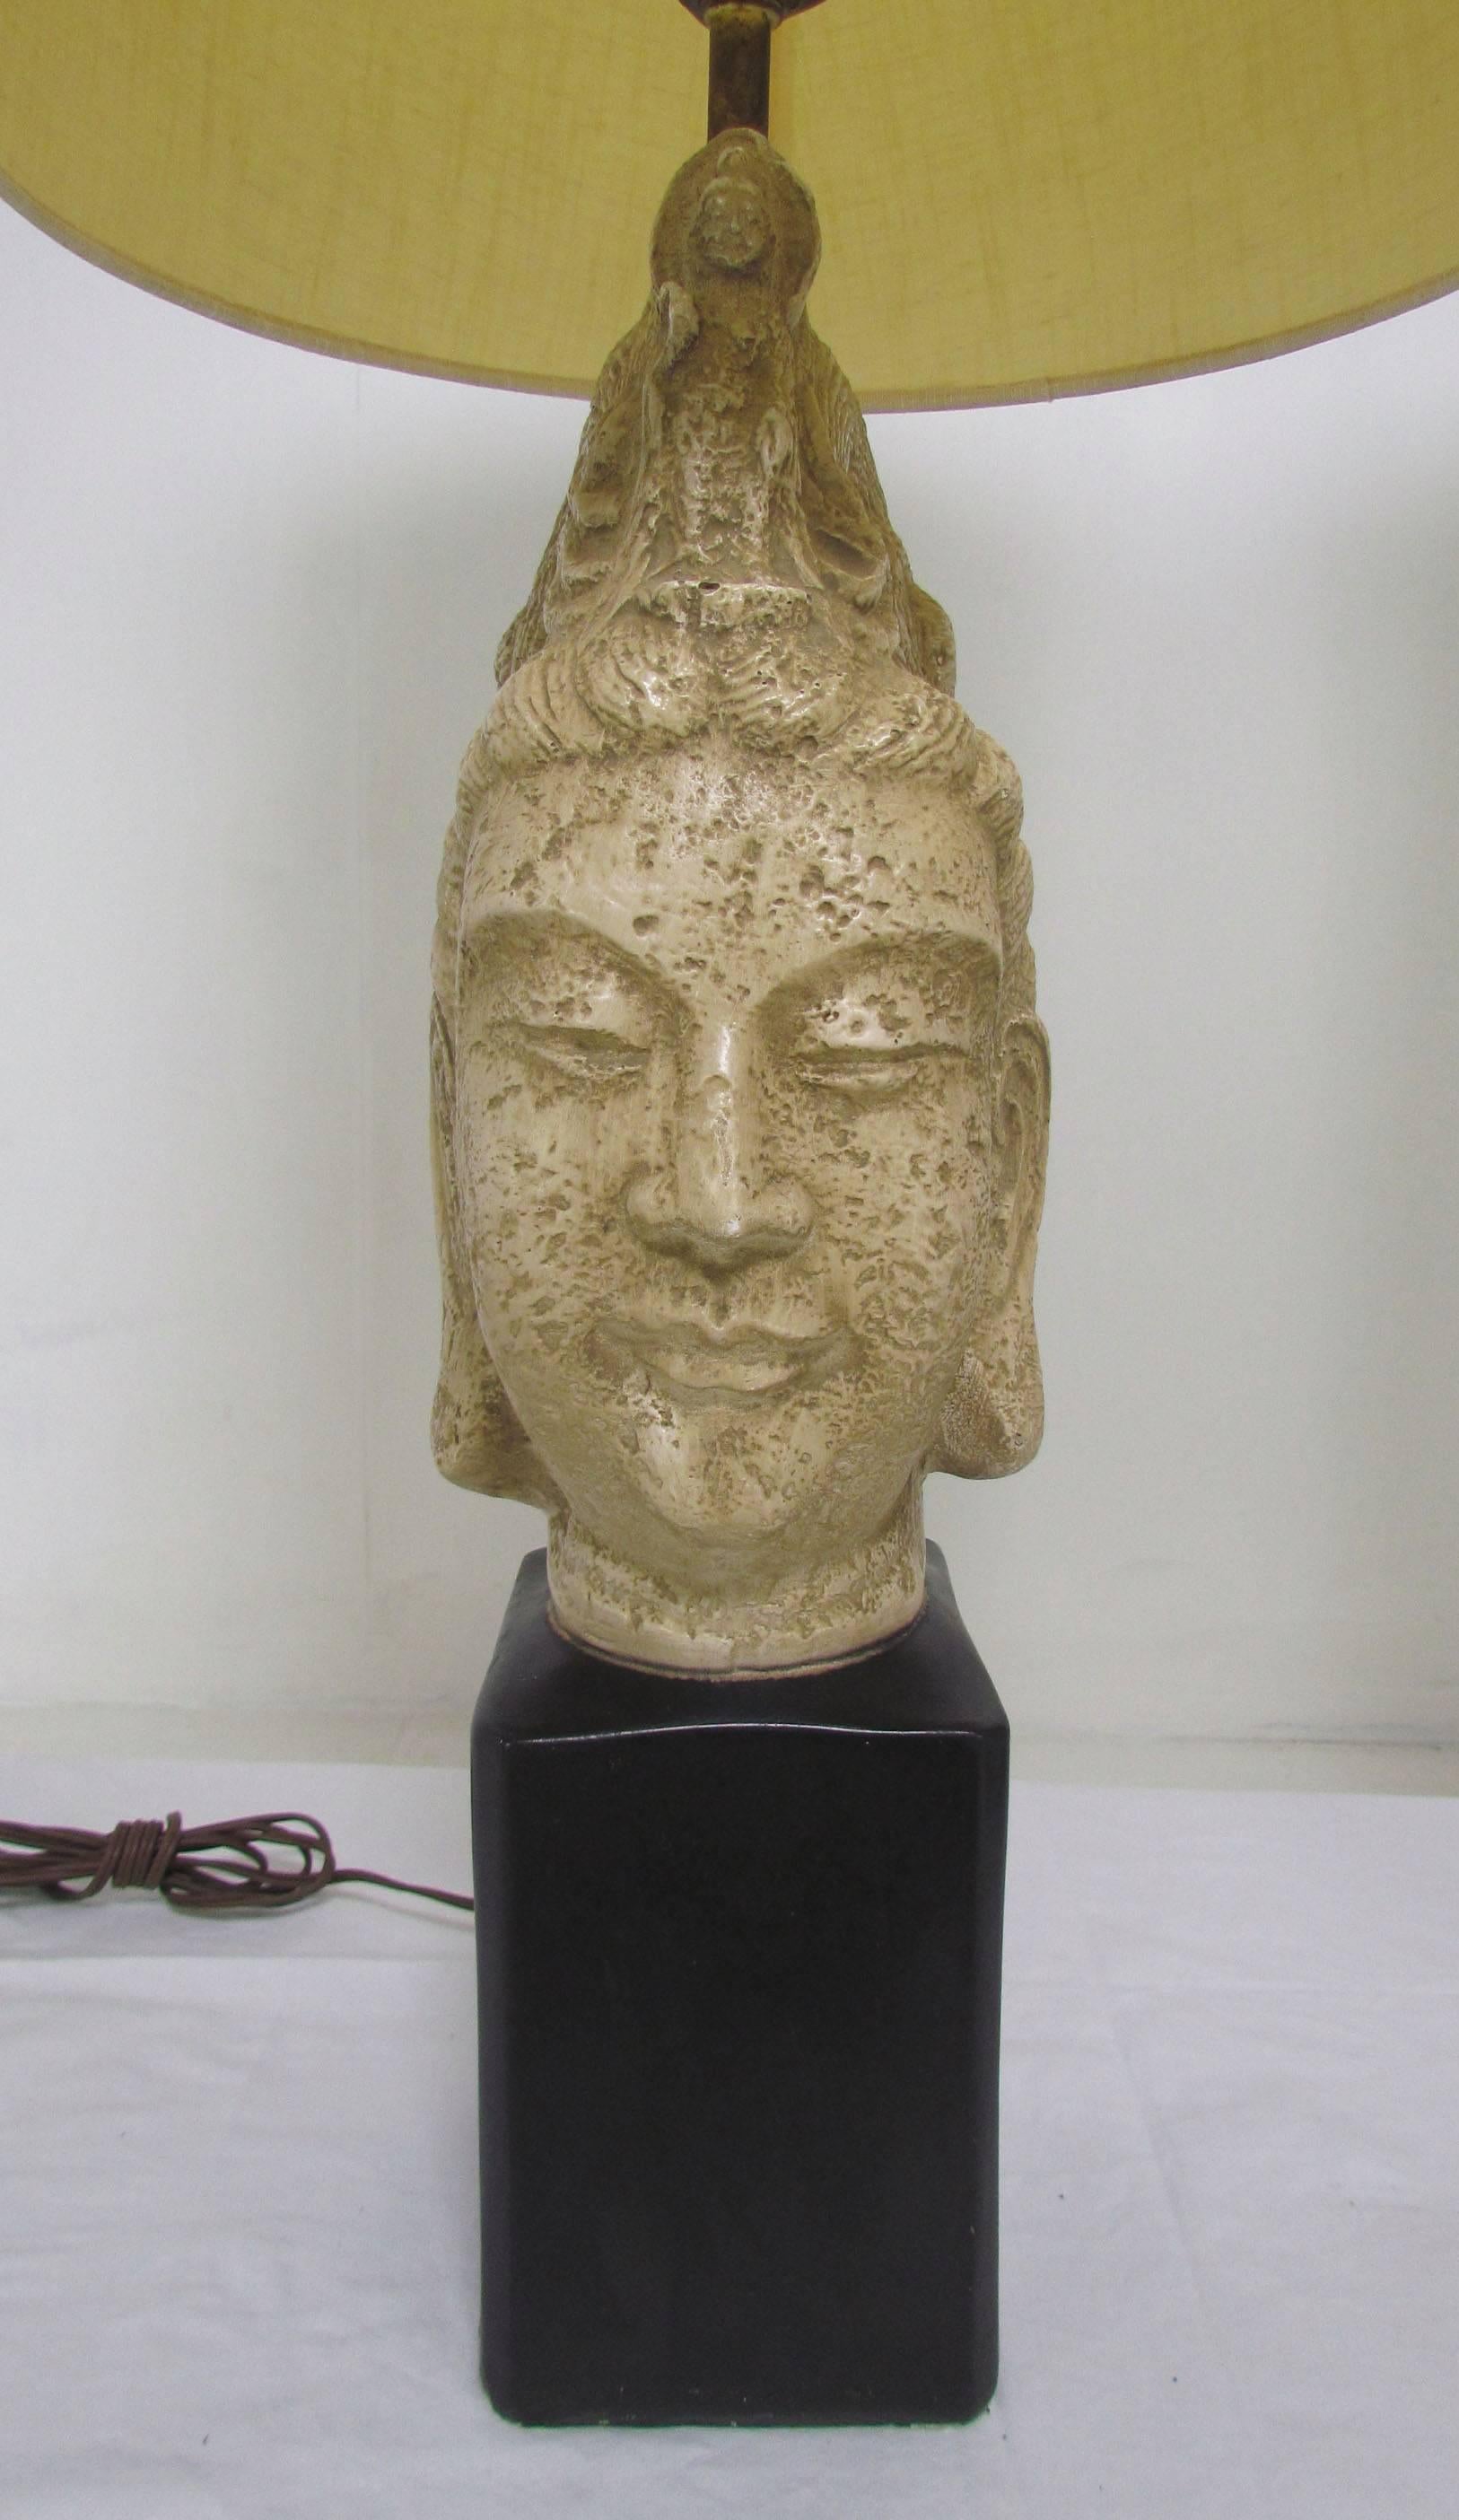 Paire de lampes de table Bouddha, vers les années 1960, à la manière de James Mont.
 
Les abat-jour ne sont pas inclus, ils sont représentés à l'échelle.

La hauteur jusqu'au sommet de la prise est de 26,5 pouces, la largeur de 6 pouces et la